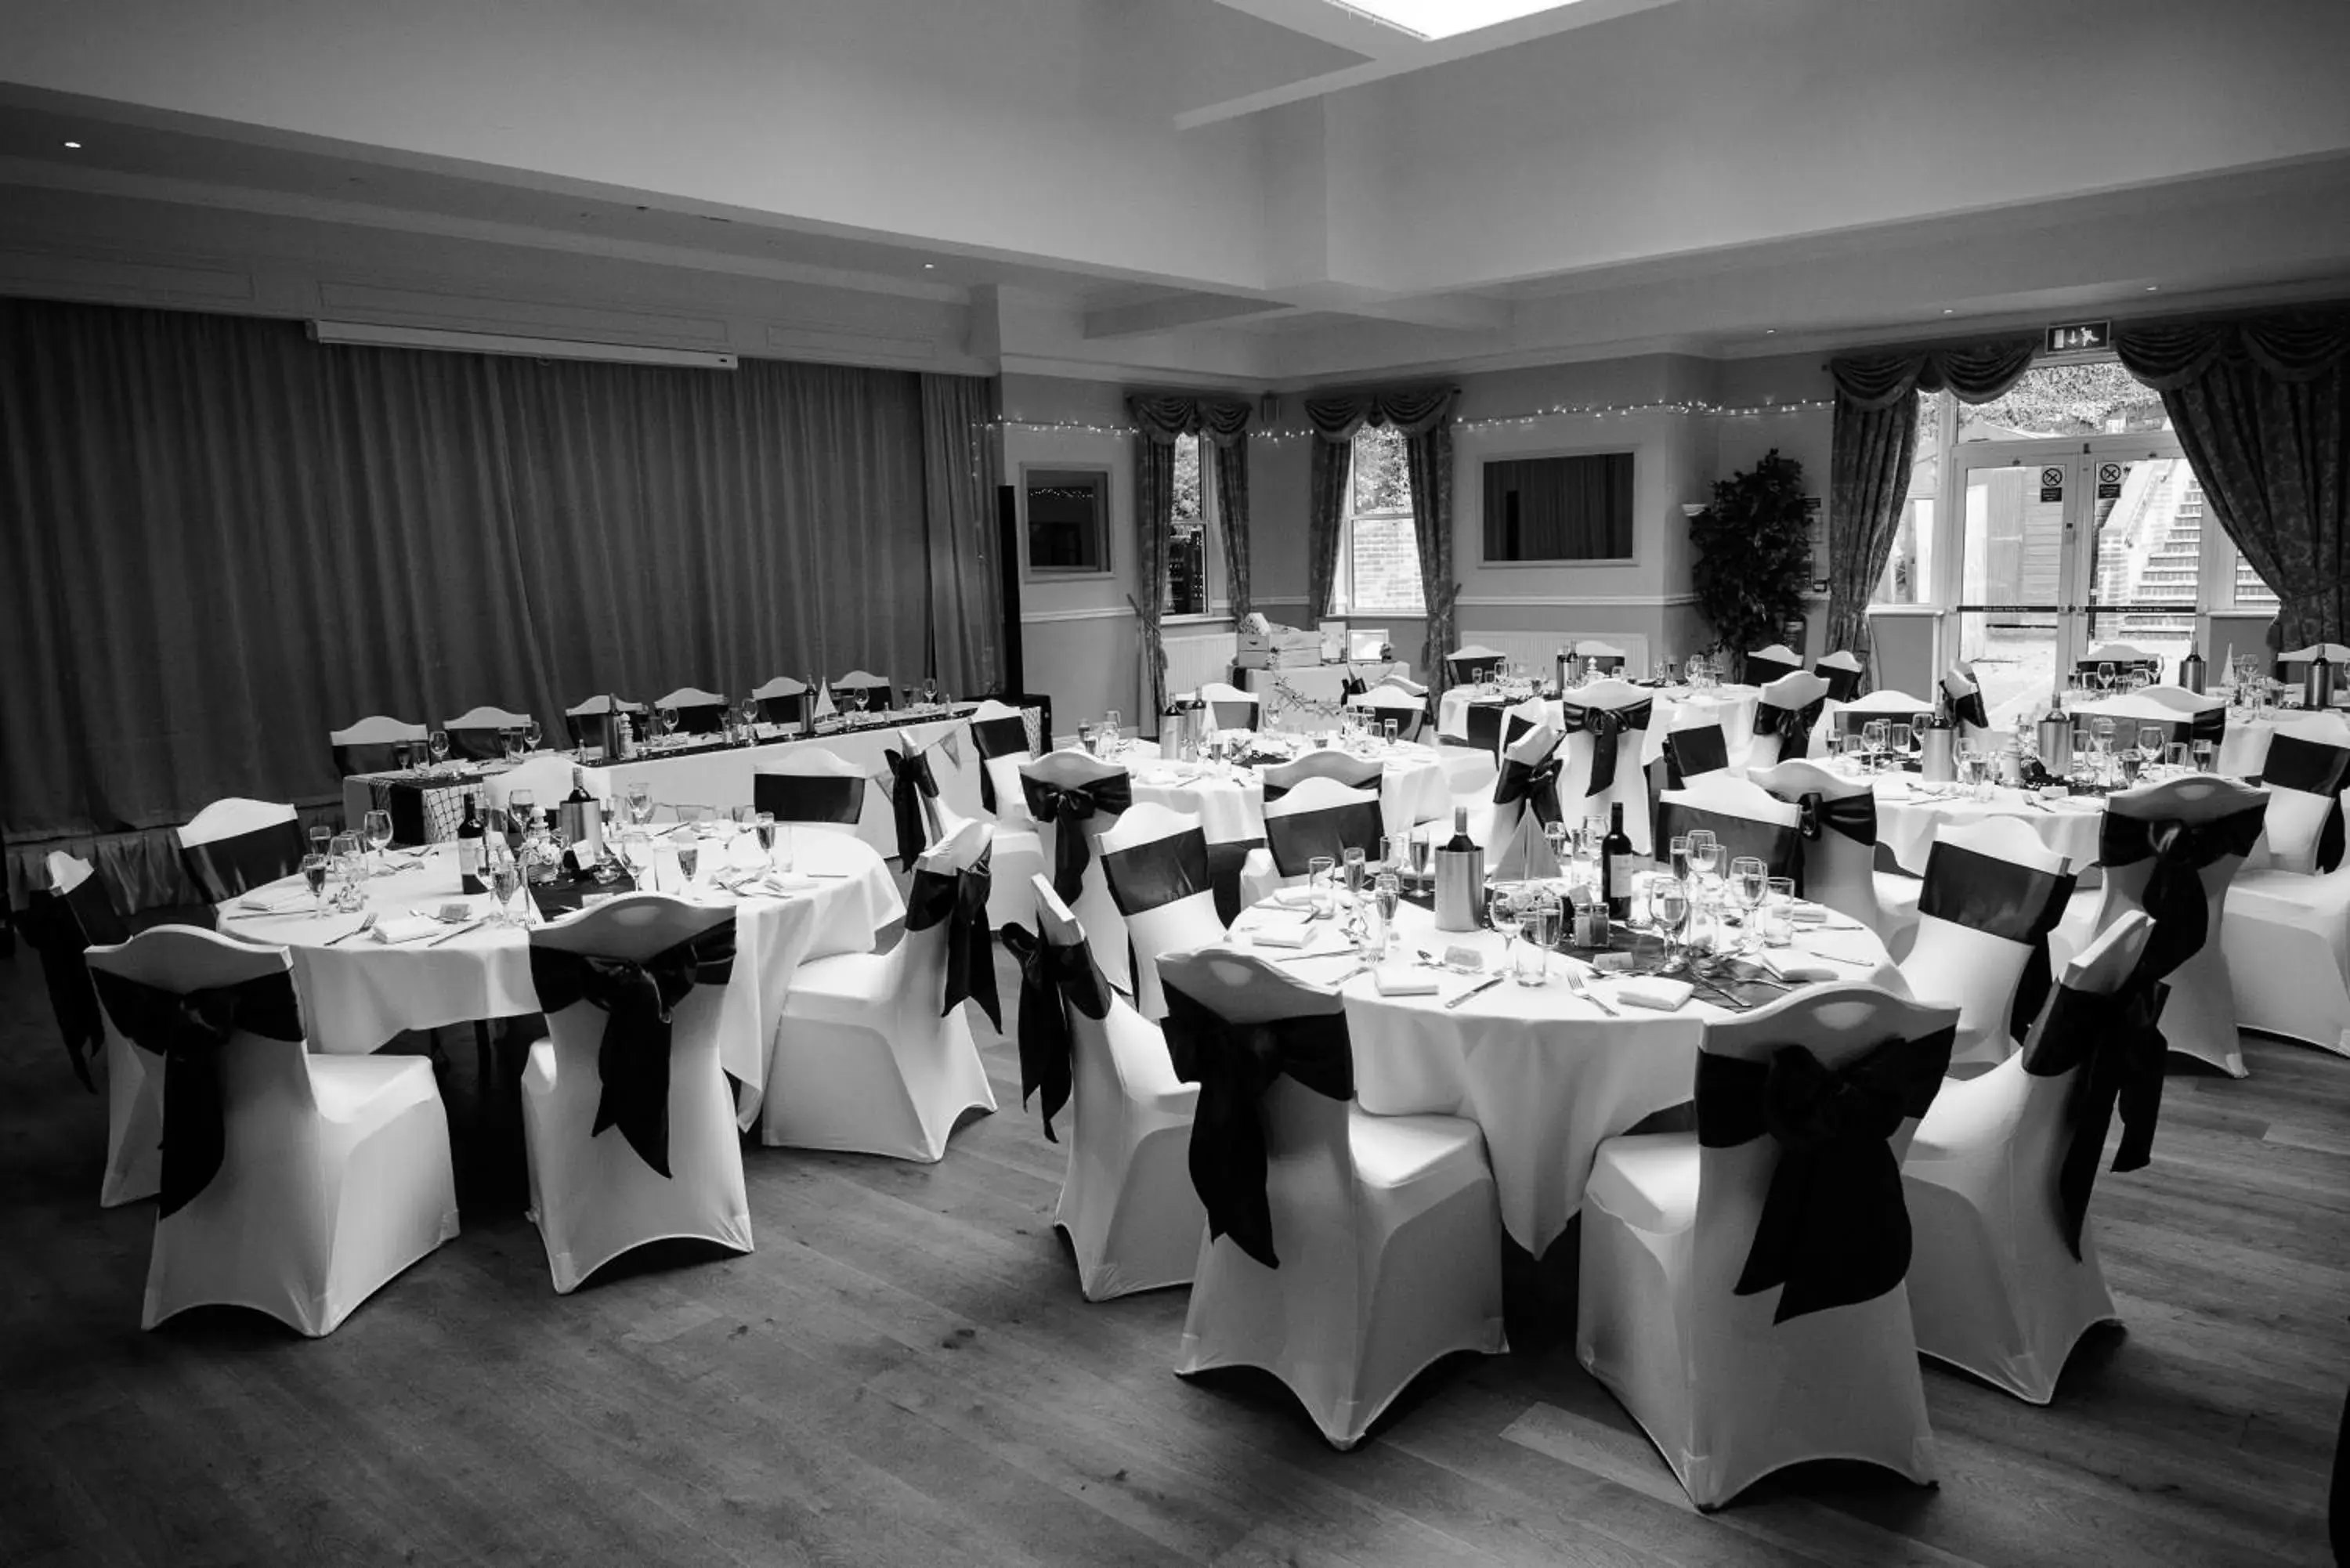 Banquet/Function facilities, Banquet Facilities in Waveney House Hotel